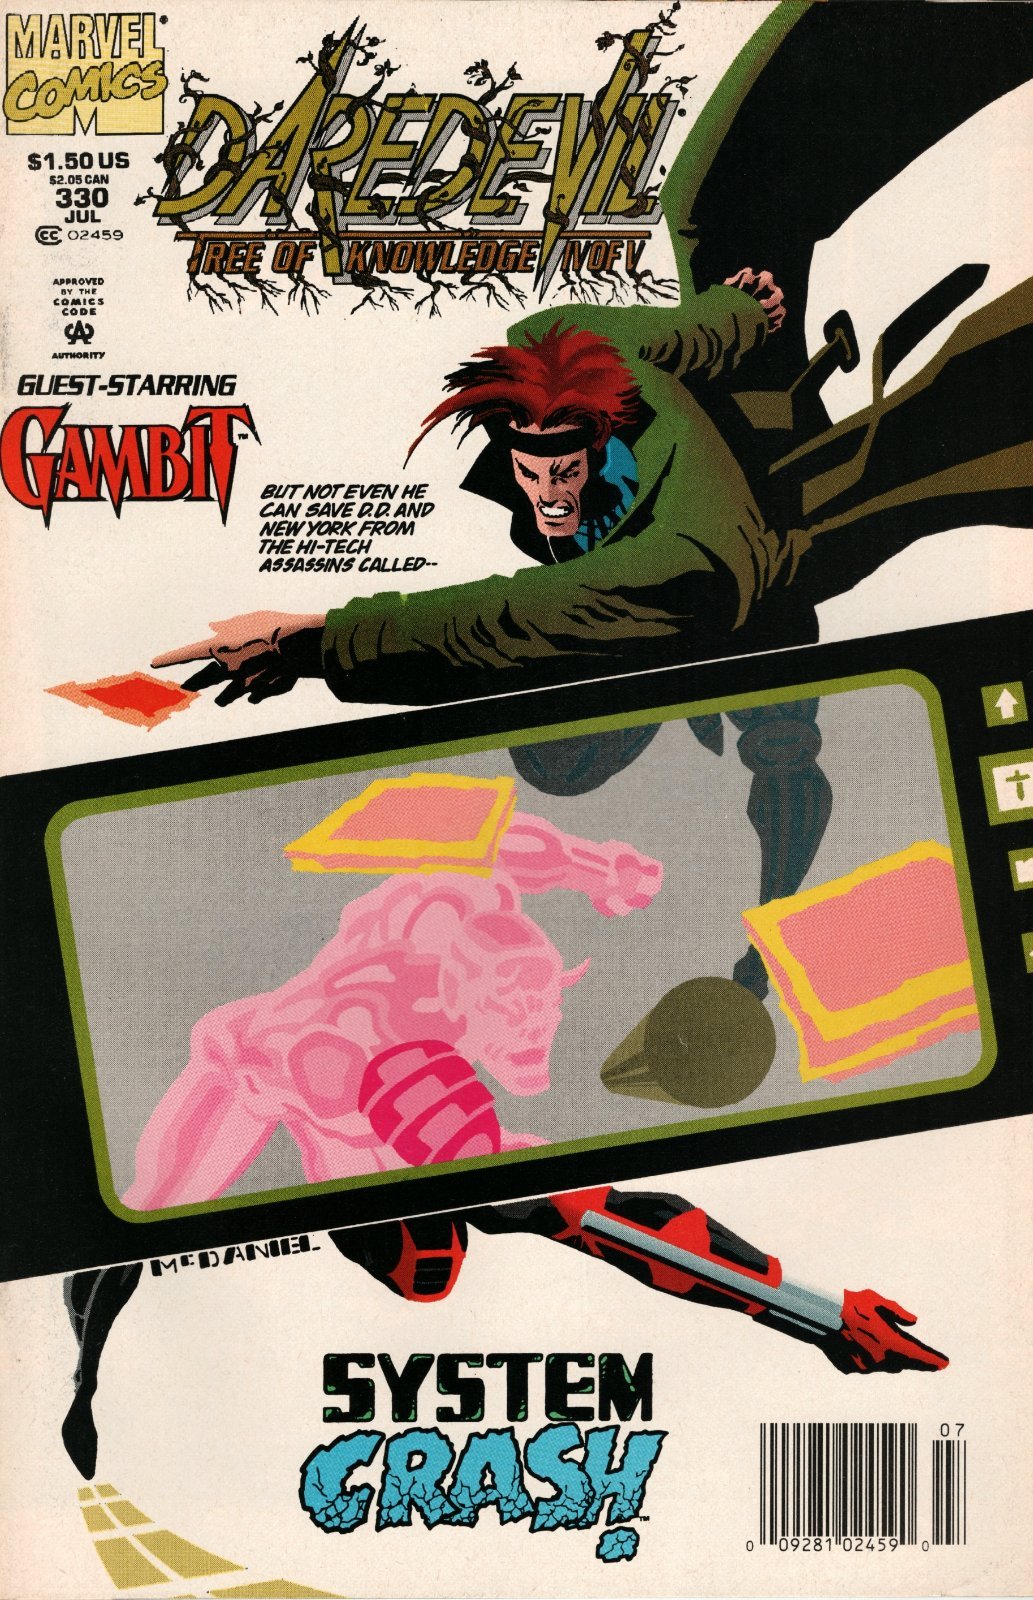 Daredevil #330 Newsstand Cover (1964-1998) Marvel